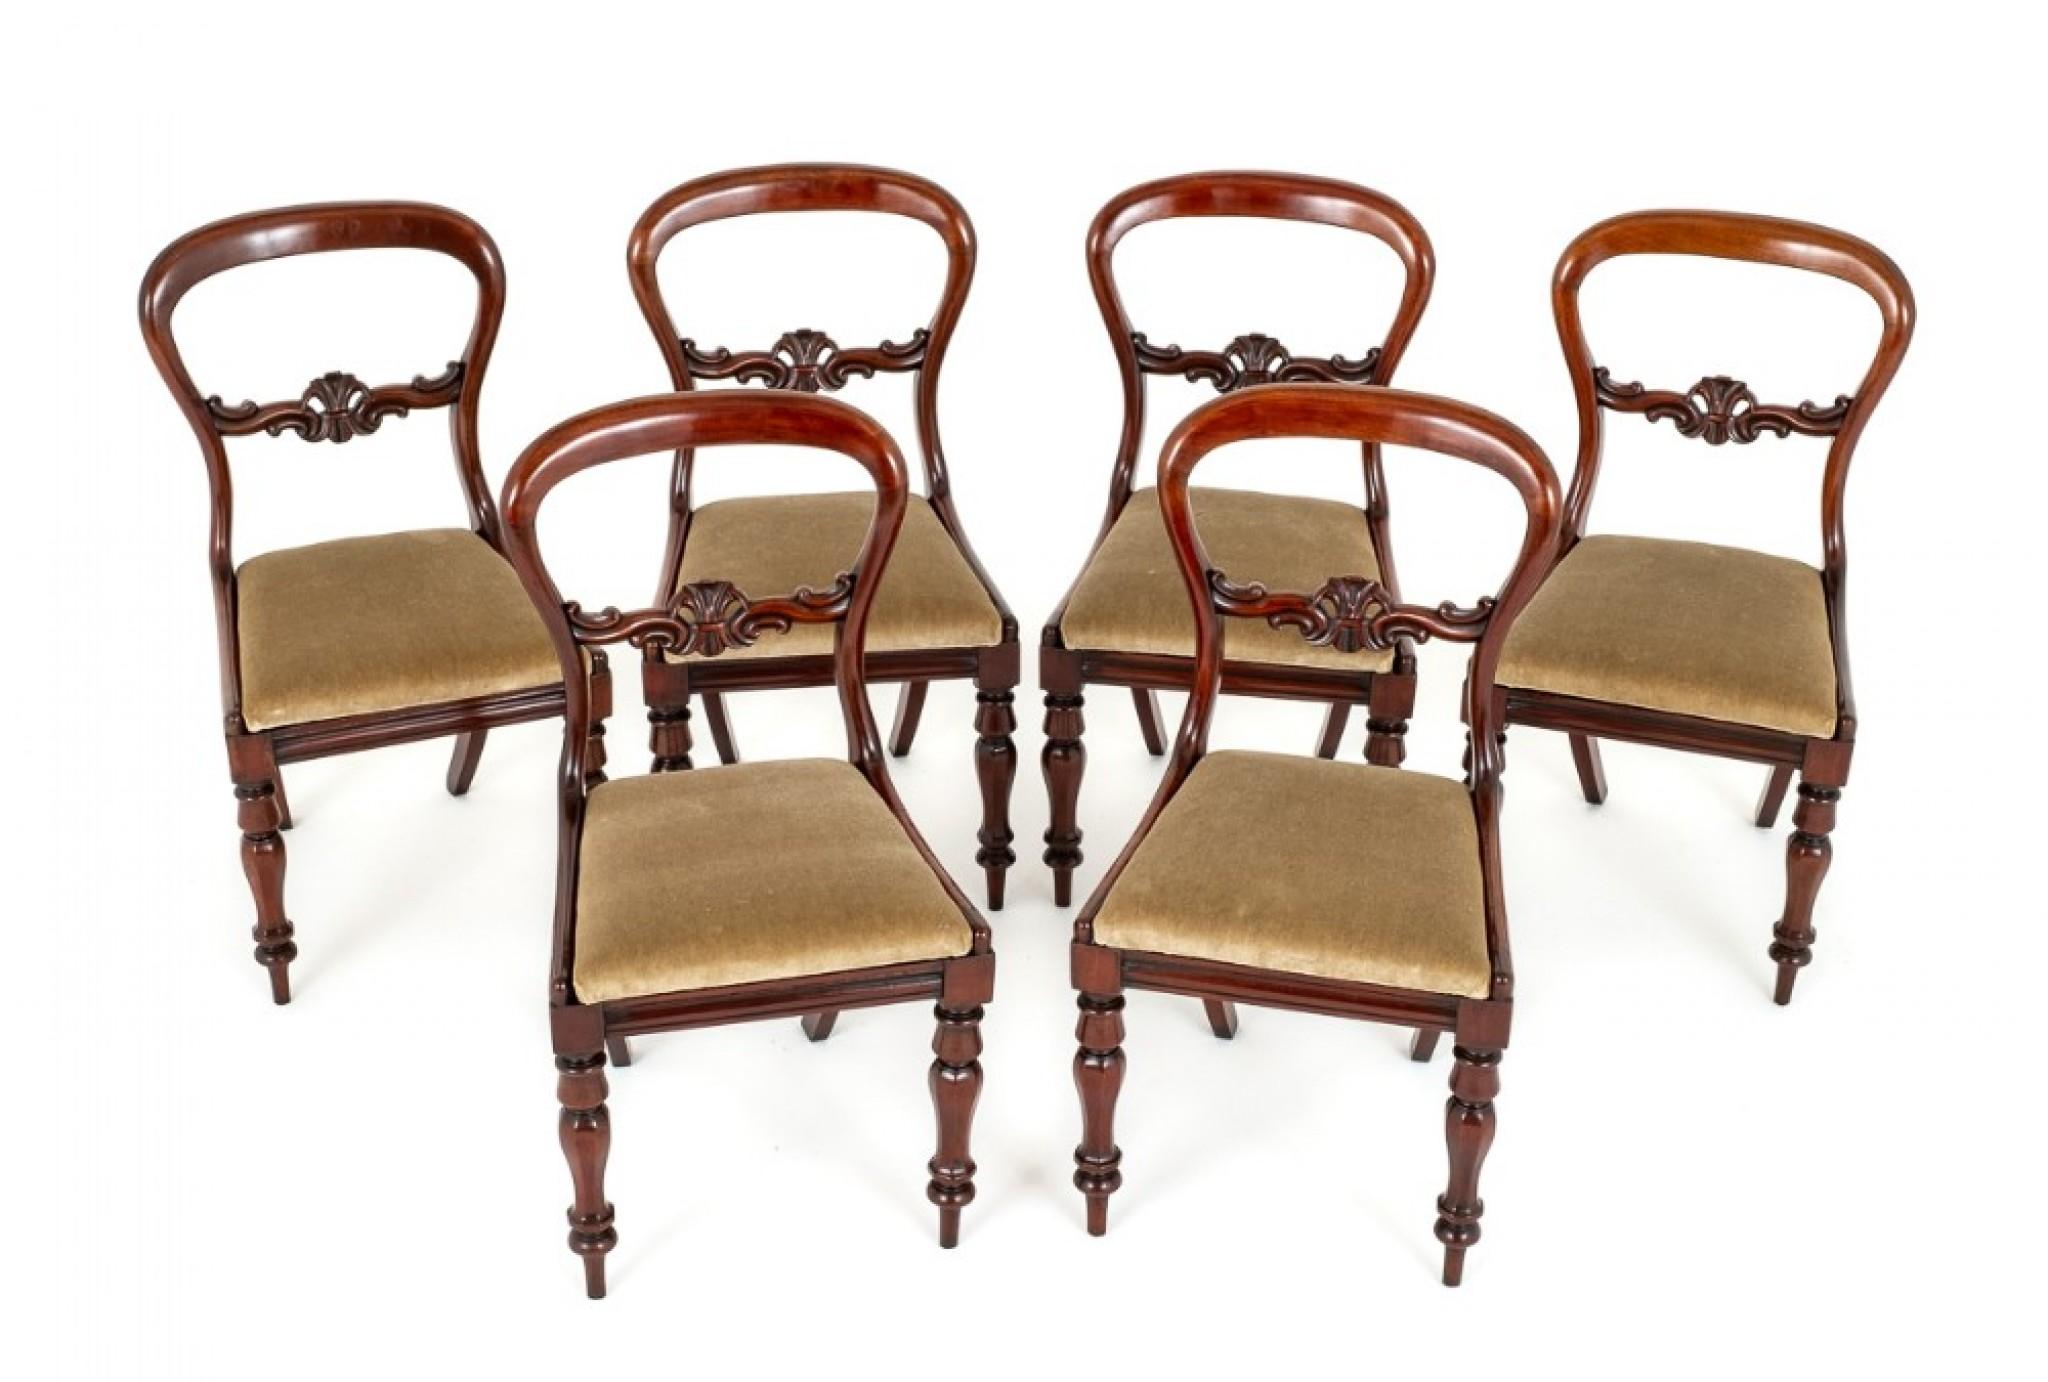 Diese Esszimmerstühle haben die typische viktorianische Ballonrückenlehne.
CIRCA 1860
Die Stühle sind auf facettierten und gedrechselten Vorderbeinen mit Säbelrückenbeinen aufgestellt.
Die Stühle sind mit einem gepolsterten, ausklappbaren Sitz